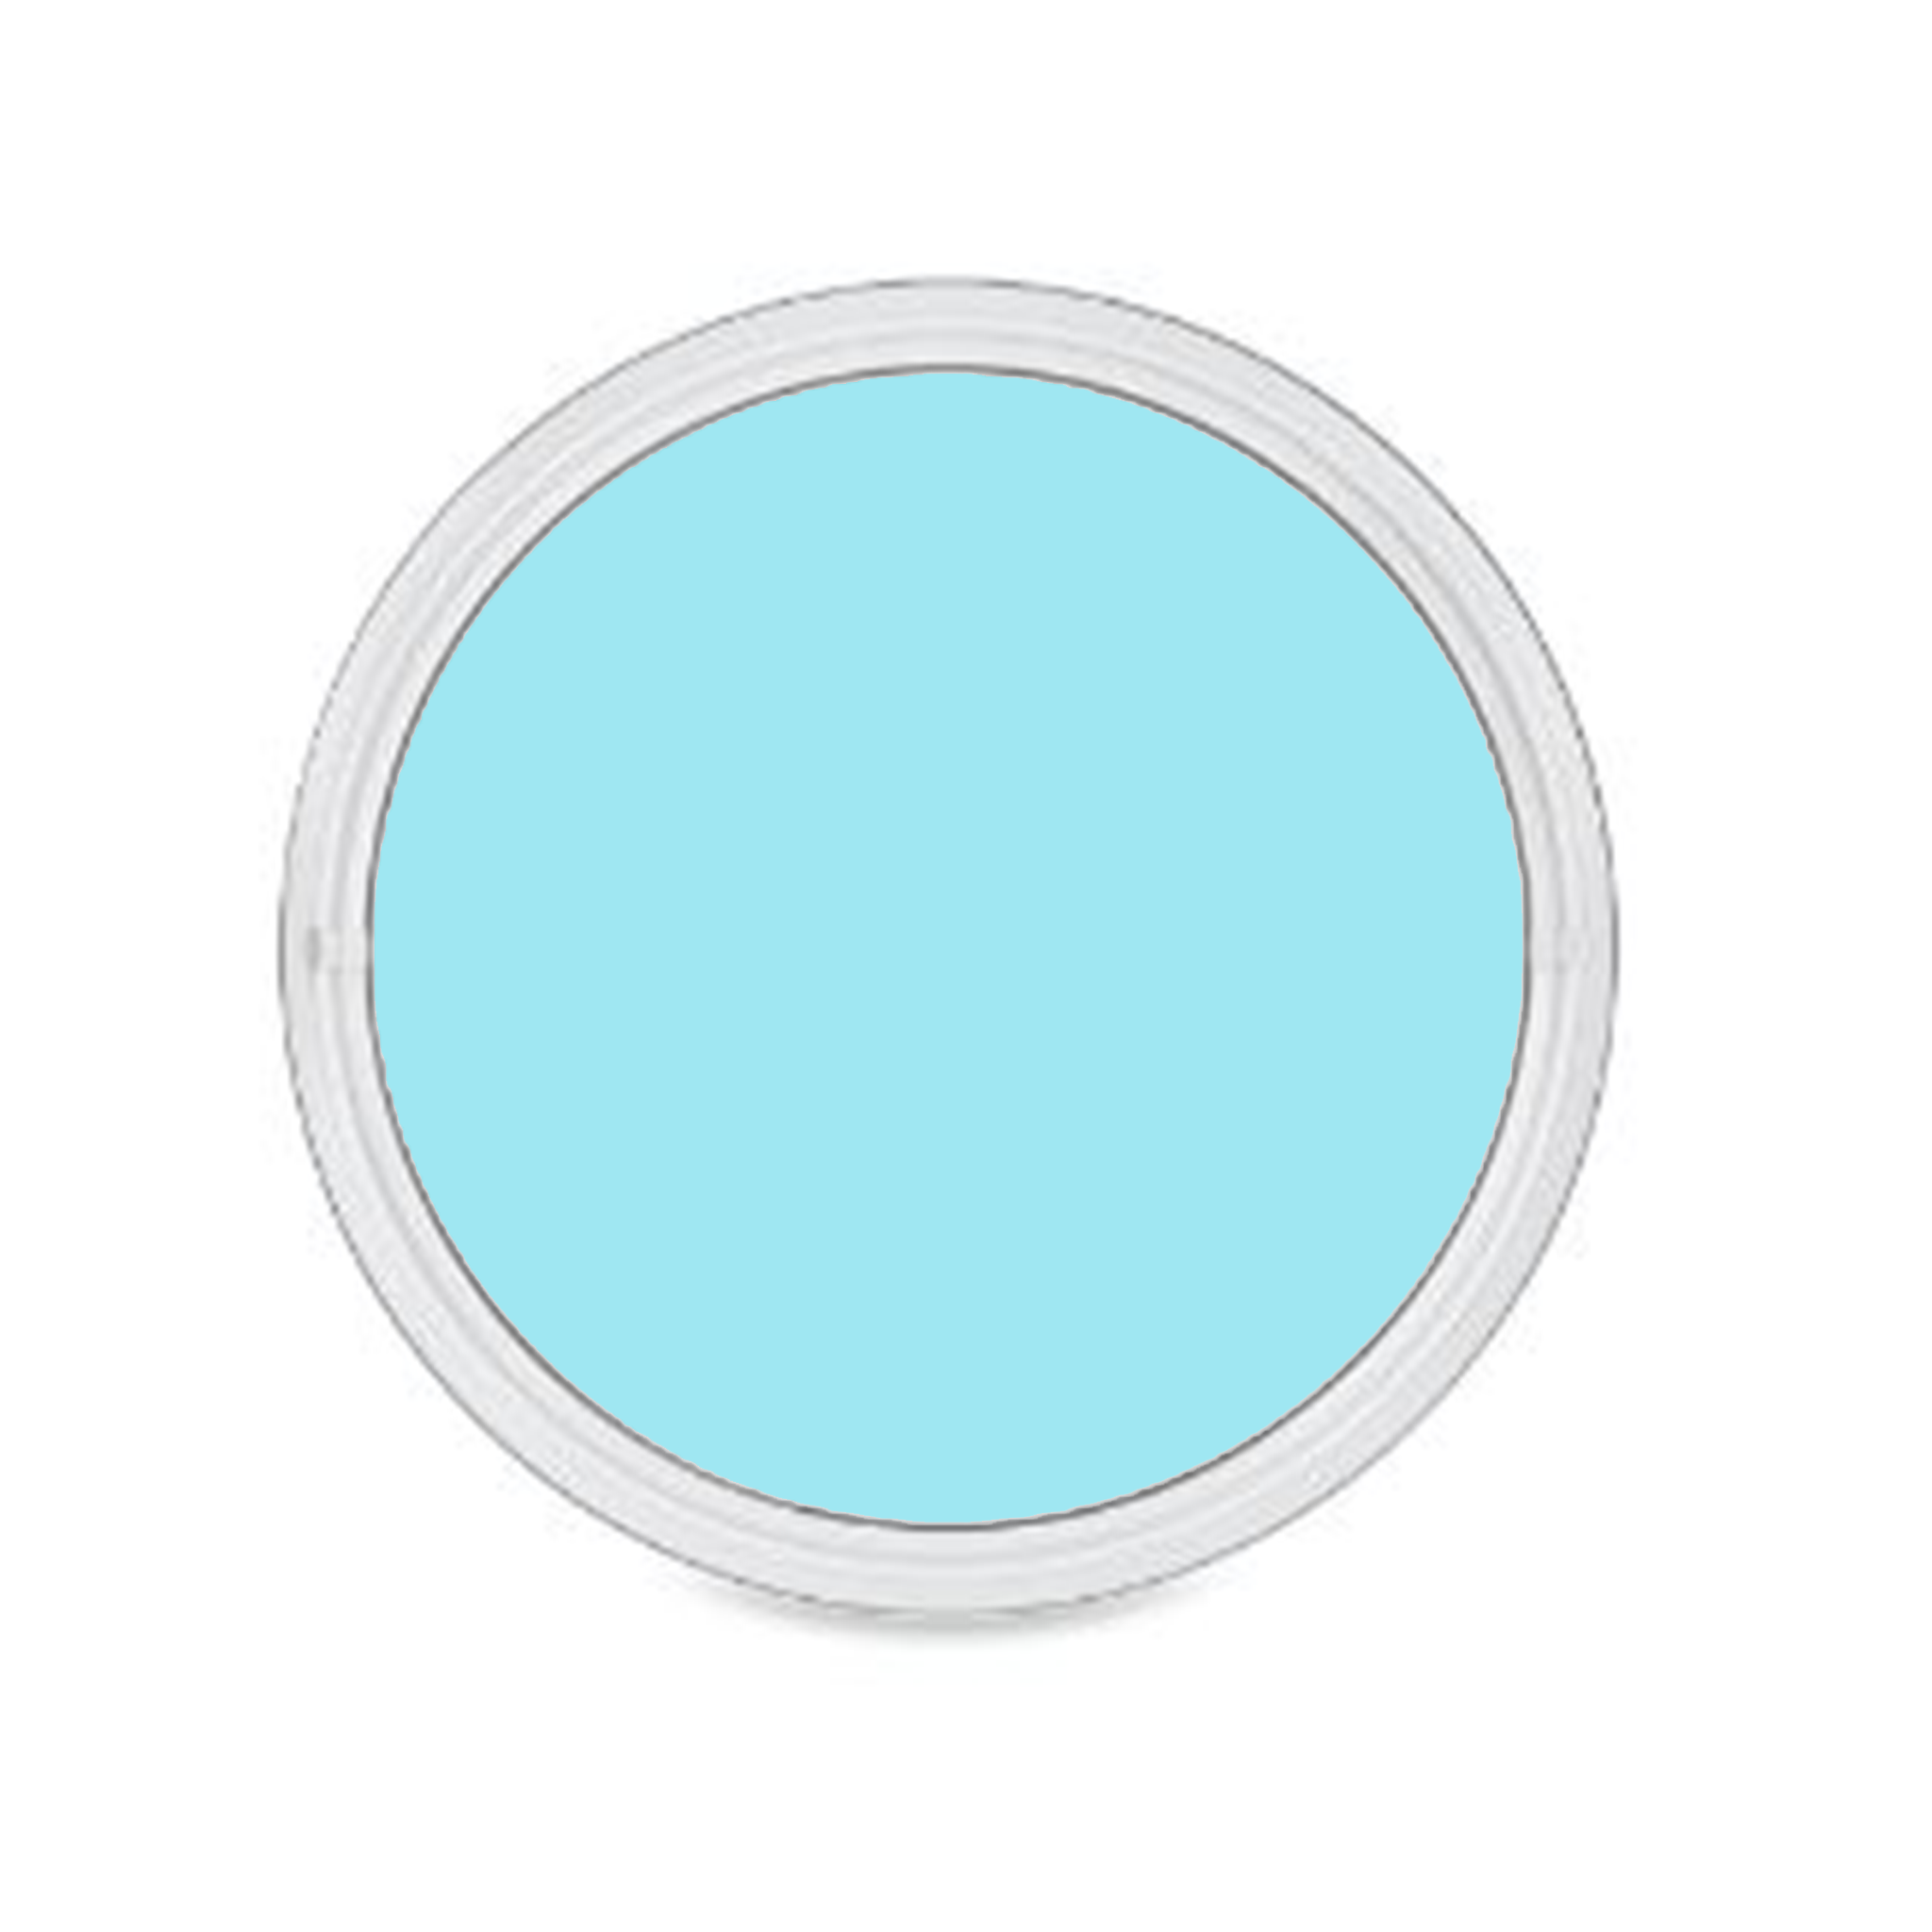 CIRCLE ROUND-image